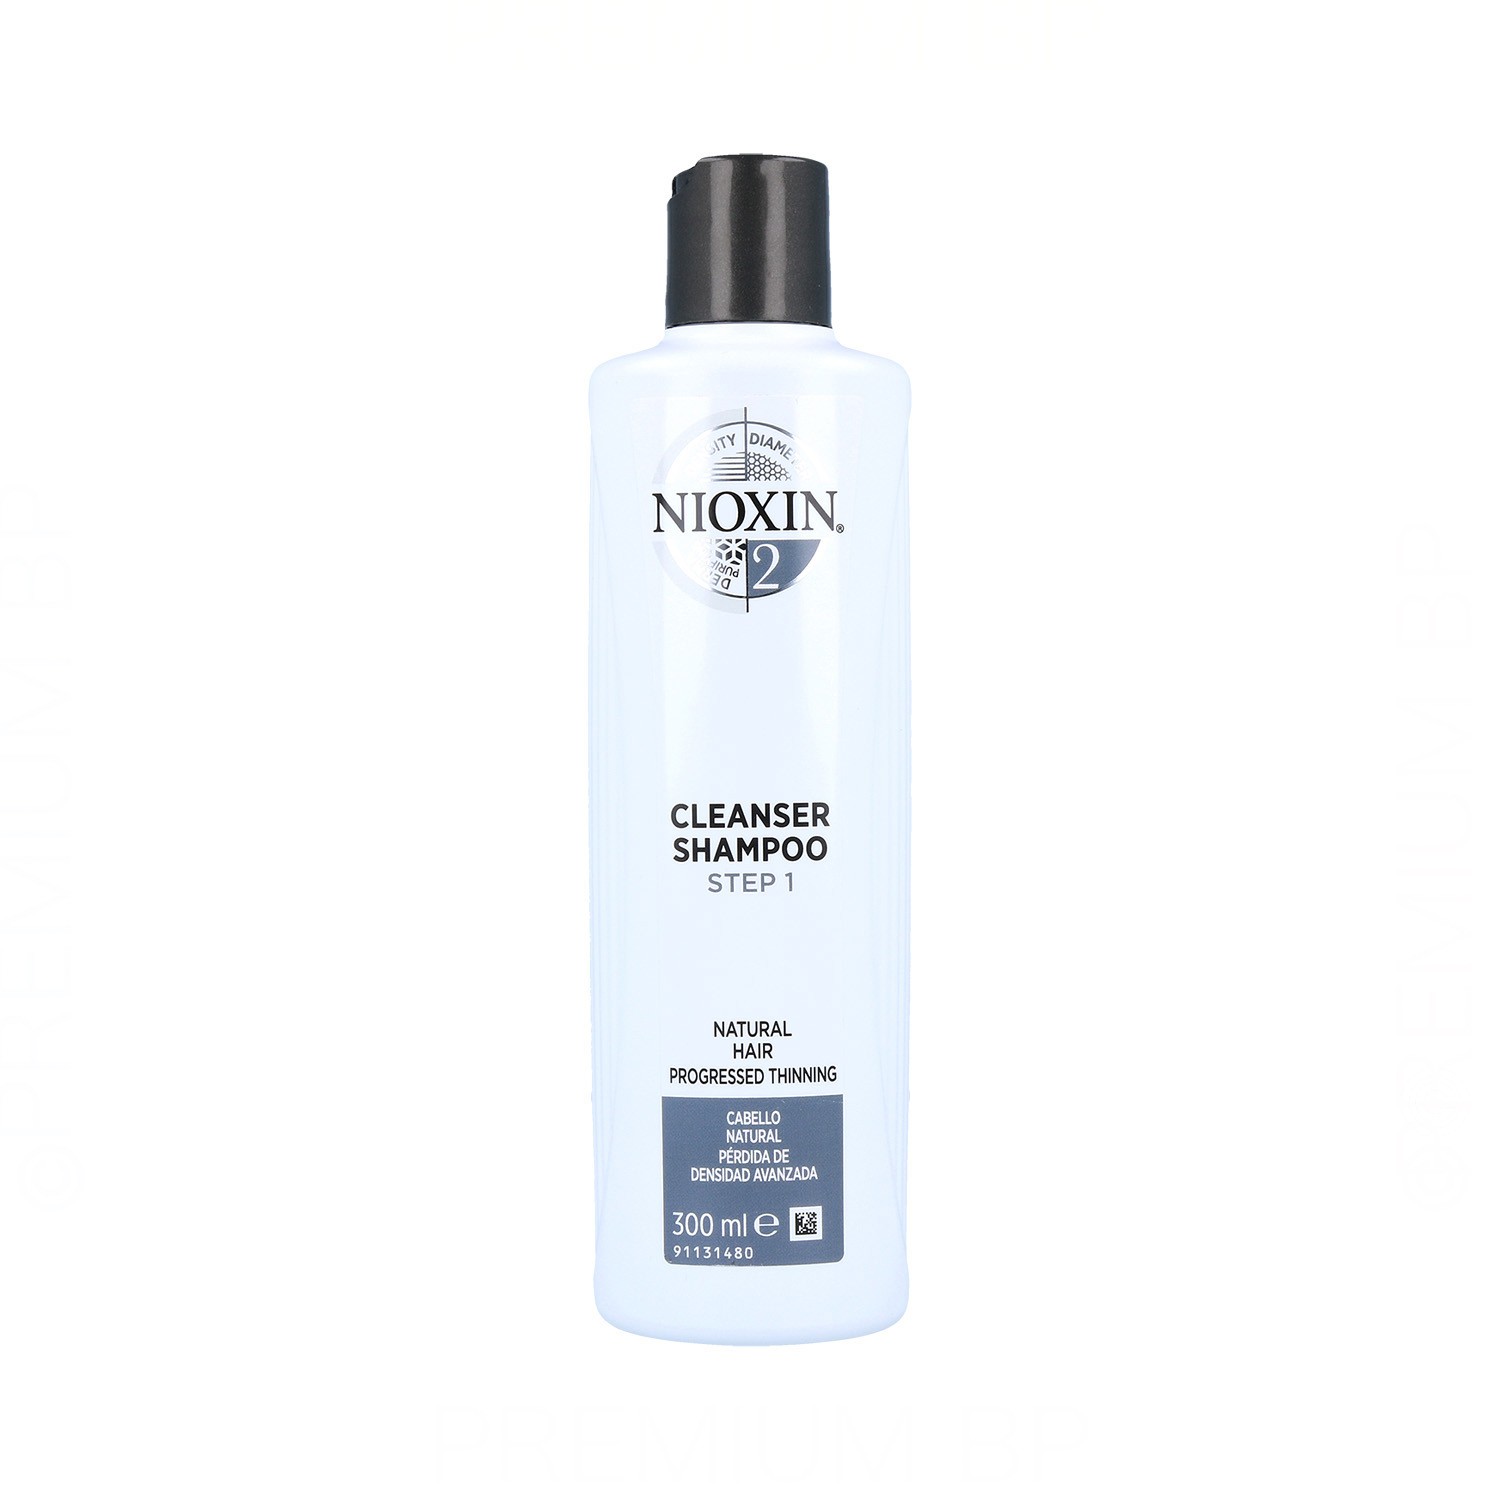 Nioxin Clean Sistema 2 Cabello Natural Avanzado Champú 300 ml